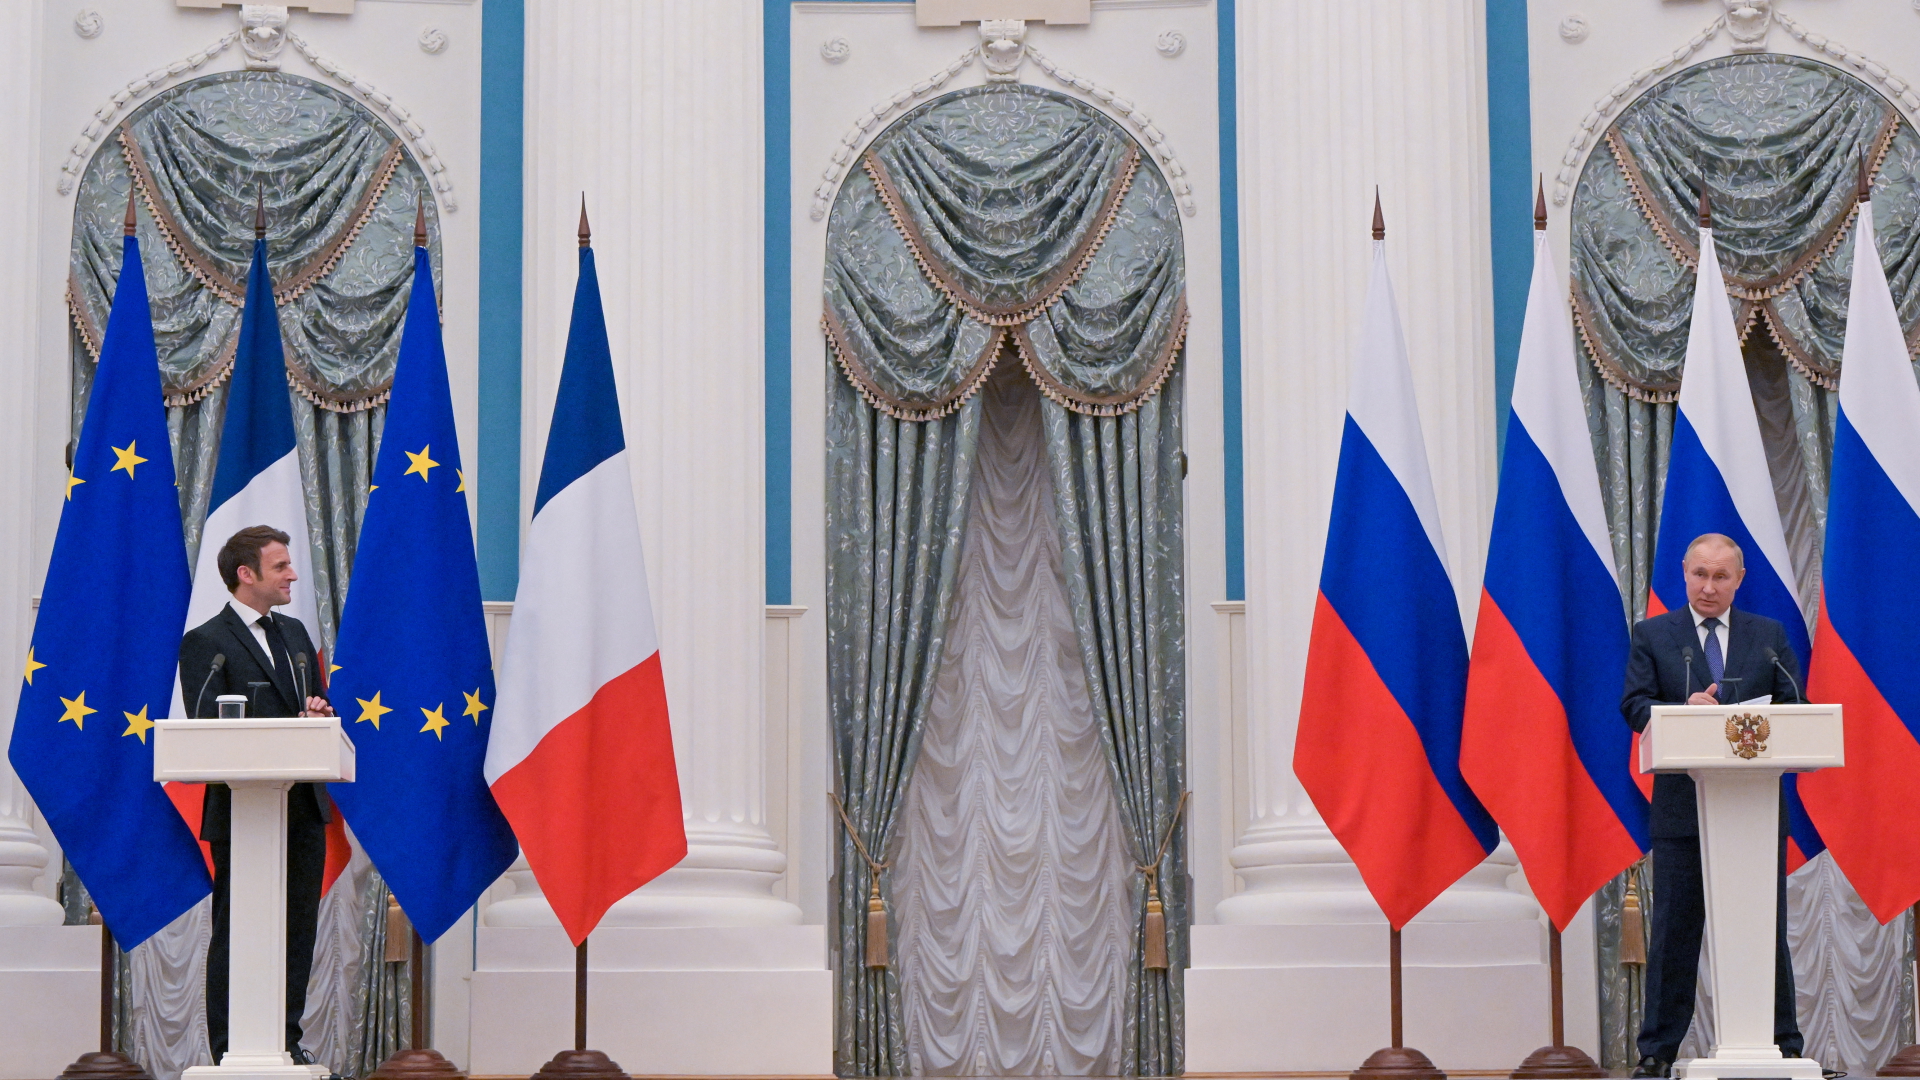 Der russische Präsident Putin und sein französischer Amtskollege Macron bei einer gemeinsamen Pressekonferenz. | EPA